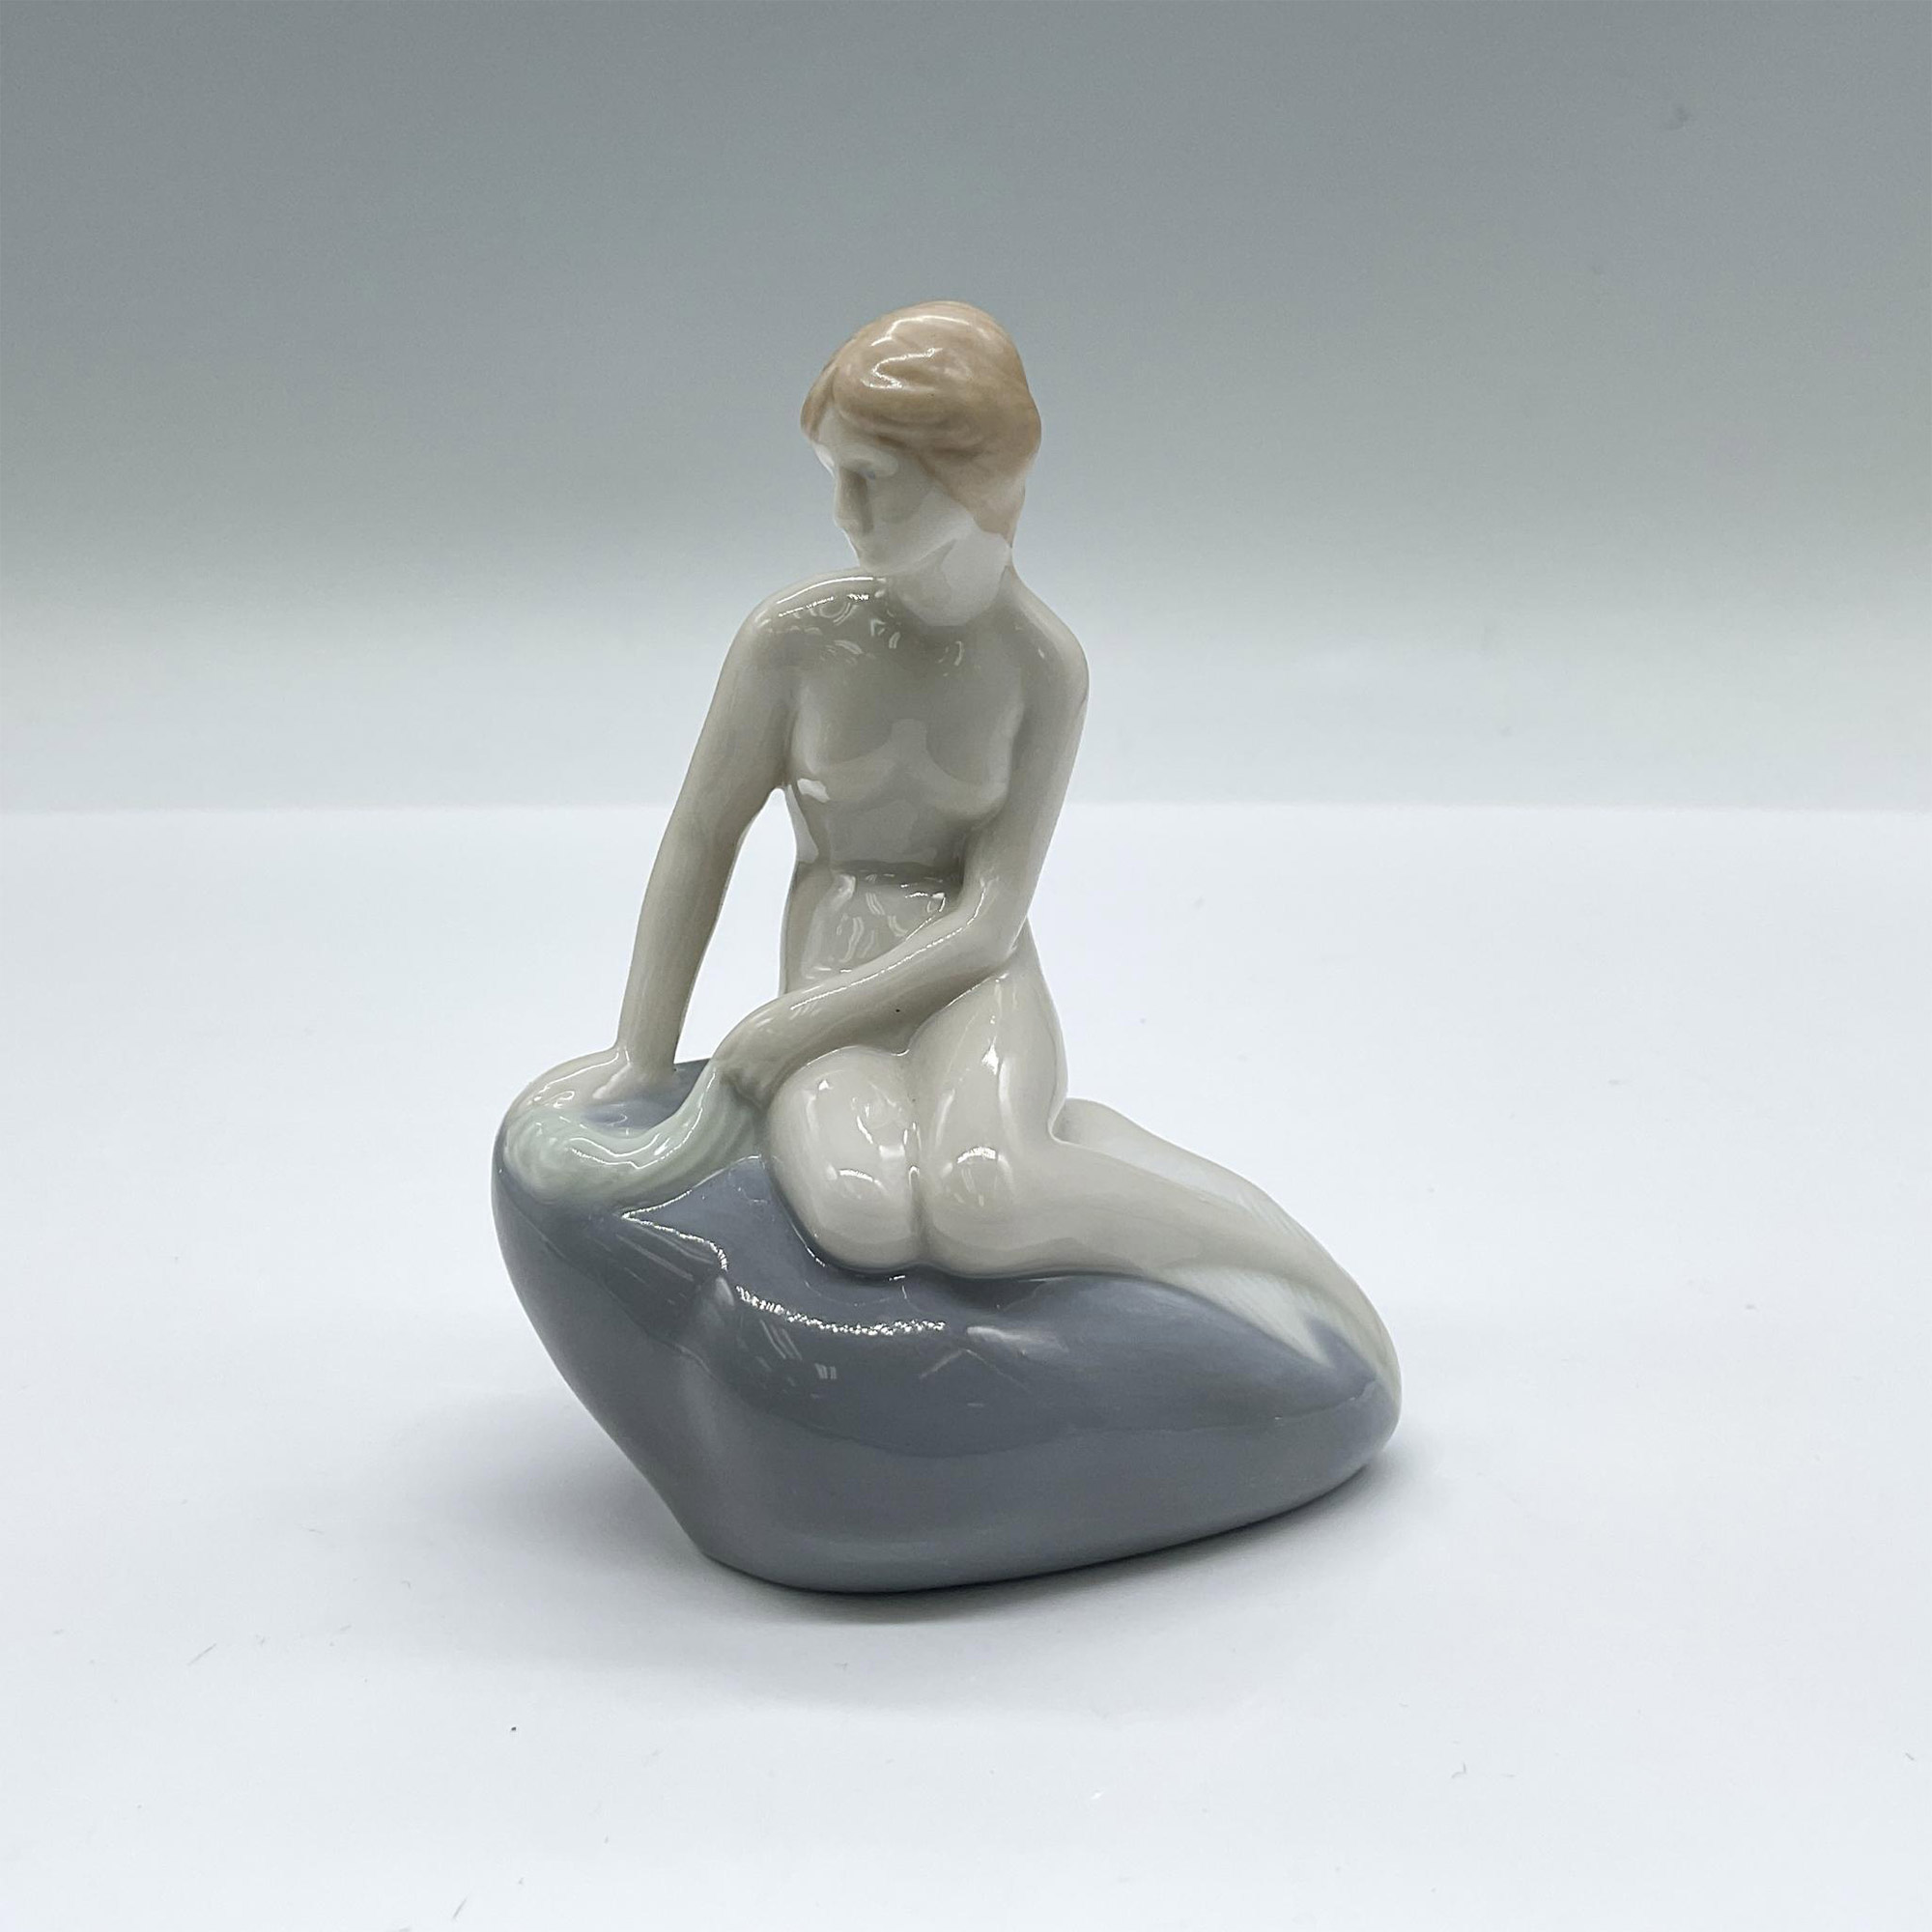 In the style of Edvard Eriksen Little Mermaid Figurine